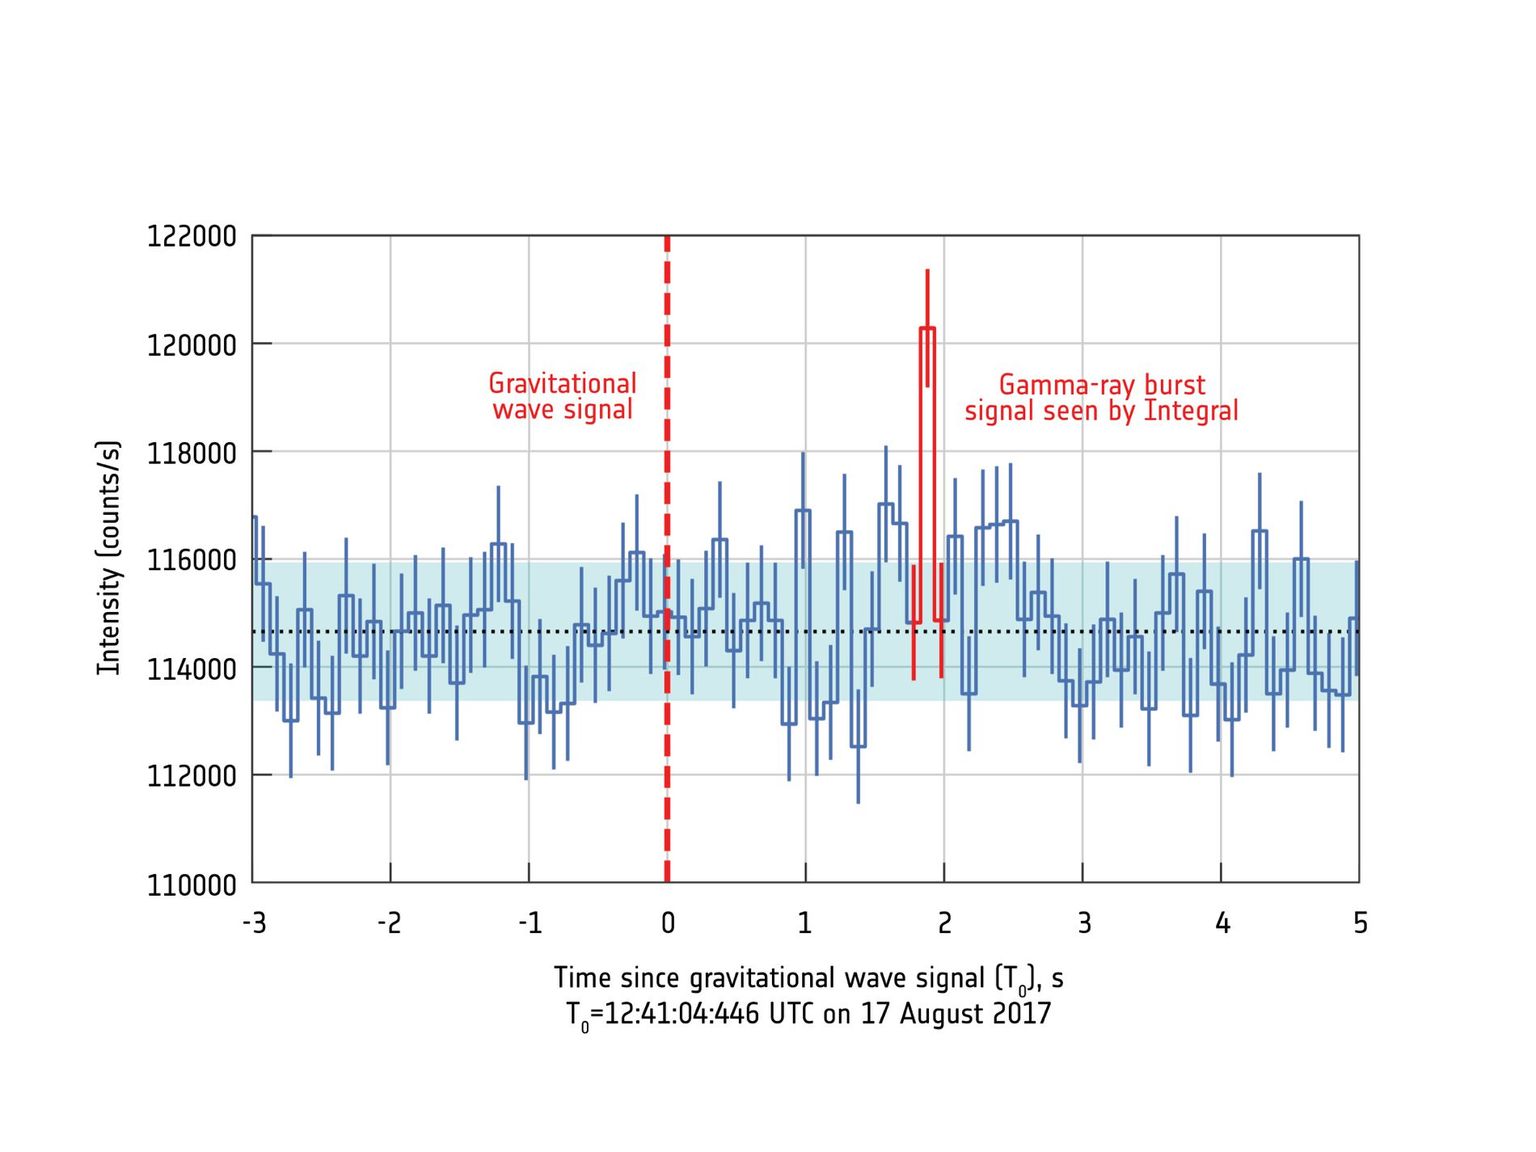 Messung eines Gammastrahlenausbruchs durch INTEGRAL. Der Ausbruch erfolgte kurz nachdem eine Gravitationswelle registriert wurde.